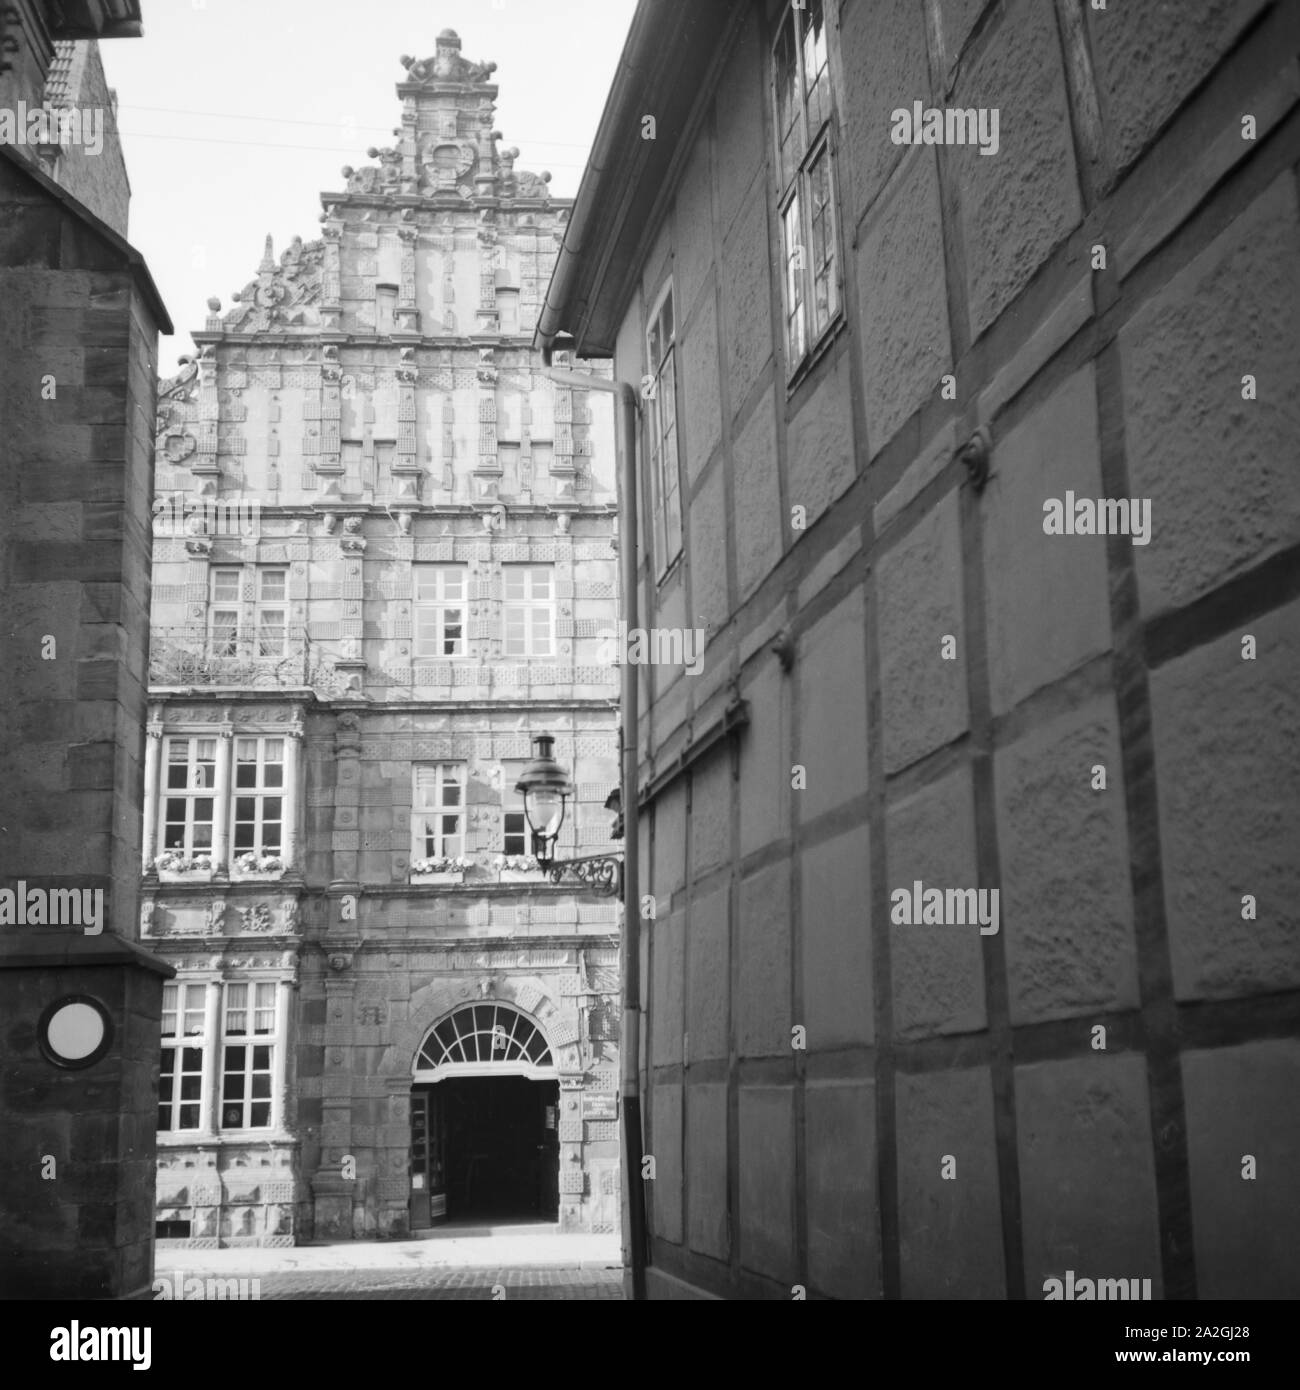 Das Rattenfängerhaus in der Osterstraße in der Altstadt von Hameln an der Weser, Deutschland 1930er Jahre. Pied Piper's House al Osterstrasse Street nella città vecchia di Hameln sul fiume Weser, Germania 1930s. Foto Stock